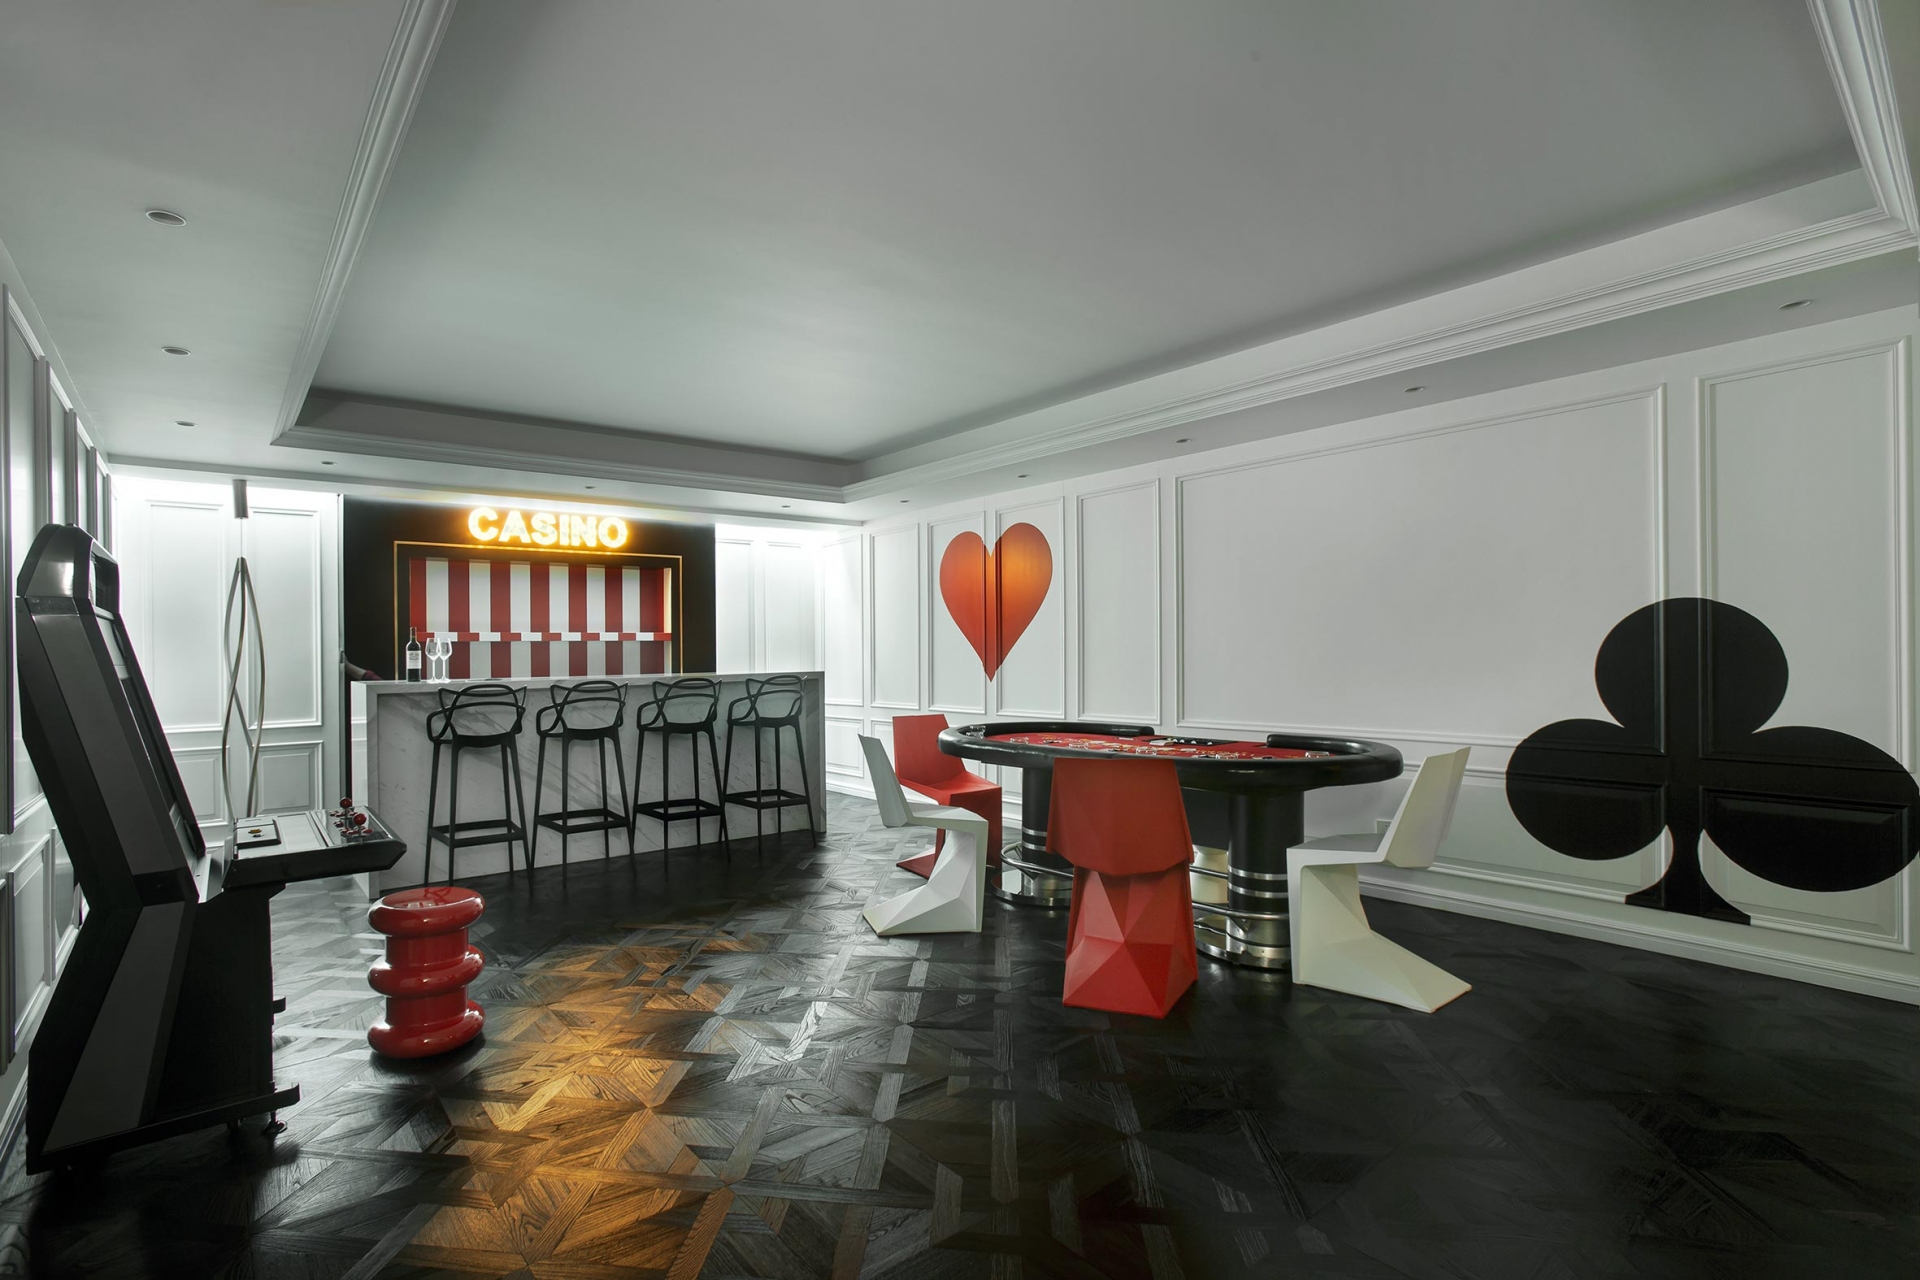 Phòng casino với gam màu trắng - đen - đỏ “quyền lực”, đem lại không gian giải trí rộng rãi thoải mái cho chủ nhà và bạn bè tụ tập.